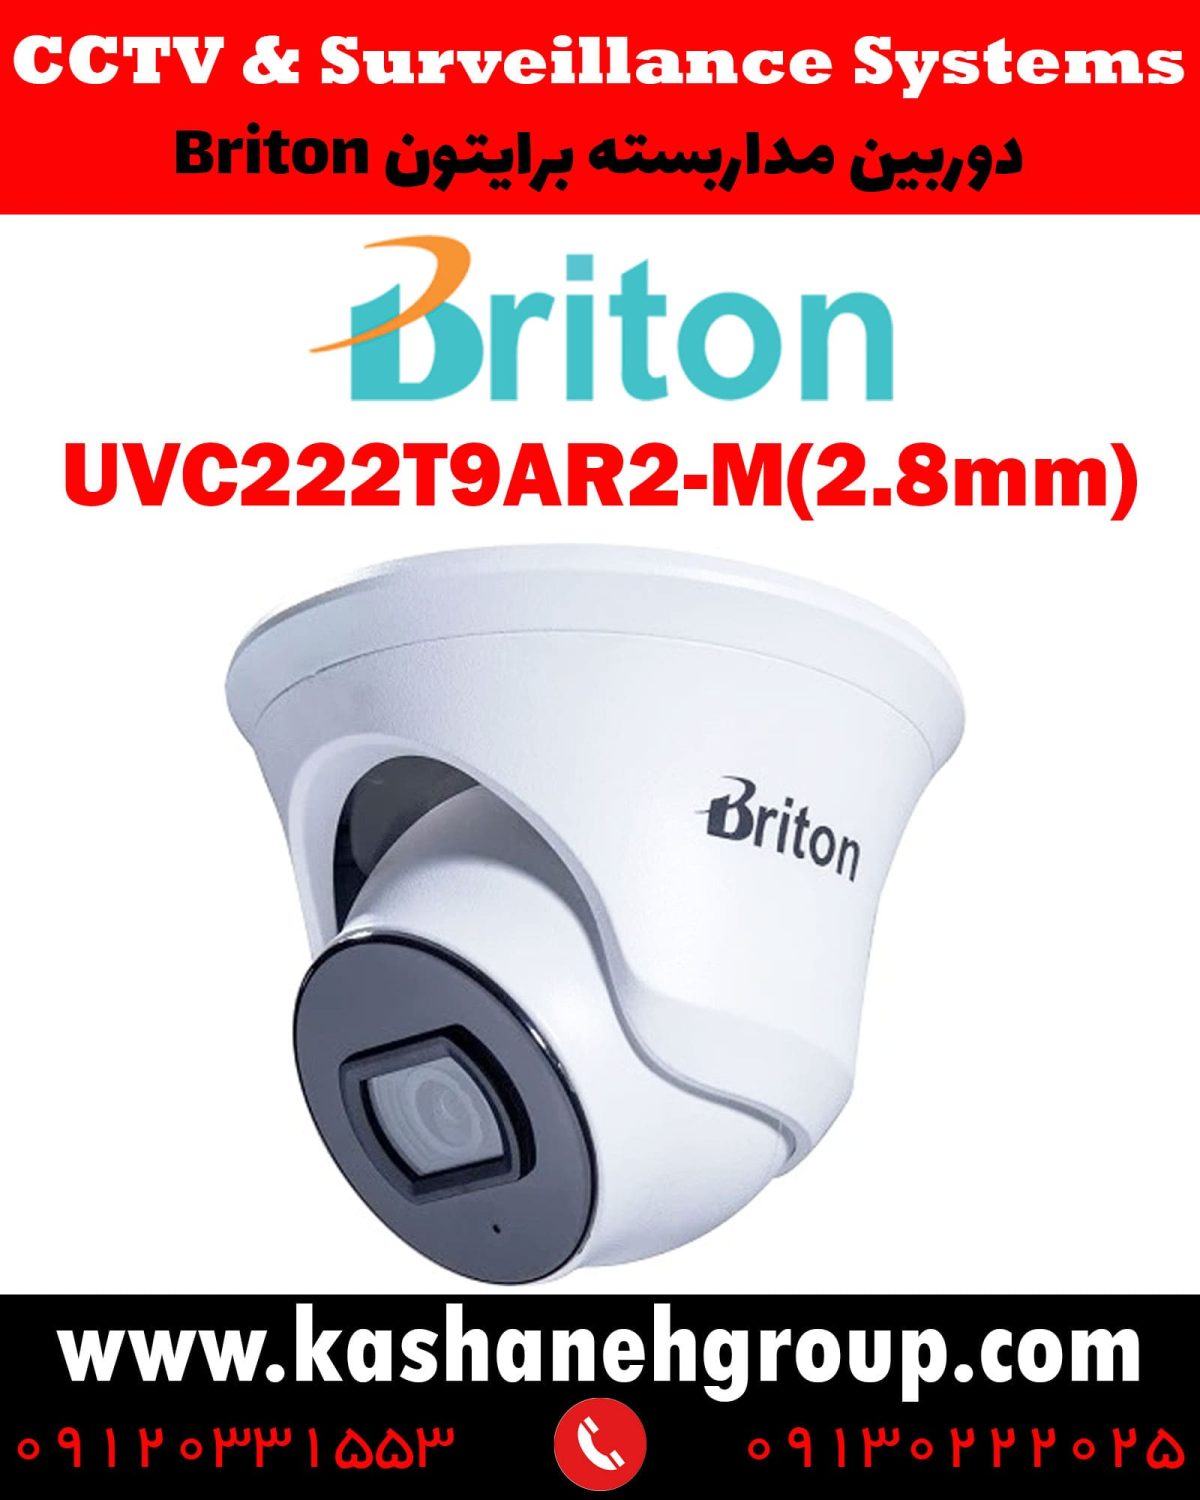 دوربین مداربسته UVC222T9AR2-M(2.8MM)، دوربین مداربسته برایتون UVC222T9AR2-M(2.8MM)، دوربین مداربسته Briton UVC222T9AR2-M(2.8MM)، دوربین برایتون UVC222T9AR2-M(2.8MM)، قیمت دوربین برایتون، نرم افزار برایتون، تعمیر دوربین برایتون، نمایندگی برایتون، نماینده برایتون، قیمت دوربین برایتون، مشخصات دوربین UVC222T9AR2-M(2.8MM)، قیمت دوربین برایتون UVC222T9AR2-M(2.8MM)، قیمت دوربین UVC222T9AR2-M(2.8MM) برایتون، پک دوربین برایتون، پک دوربین مداربسته برایتون، دوربین Briton، دوربین مداربسته برایتون Briton UVC222T9AR2-M(2.8MM) ، نماینده دوربین Briton، نمایندگی دوربین Briton، نرم افزار موبایل دوربین مداربسته Briton،